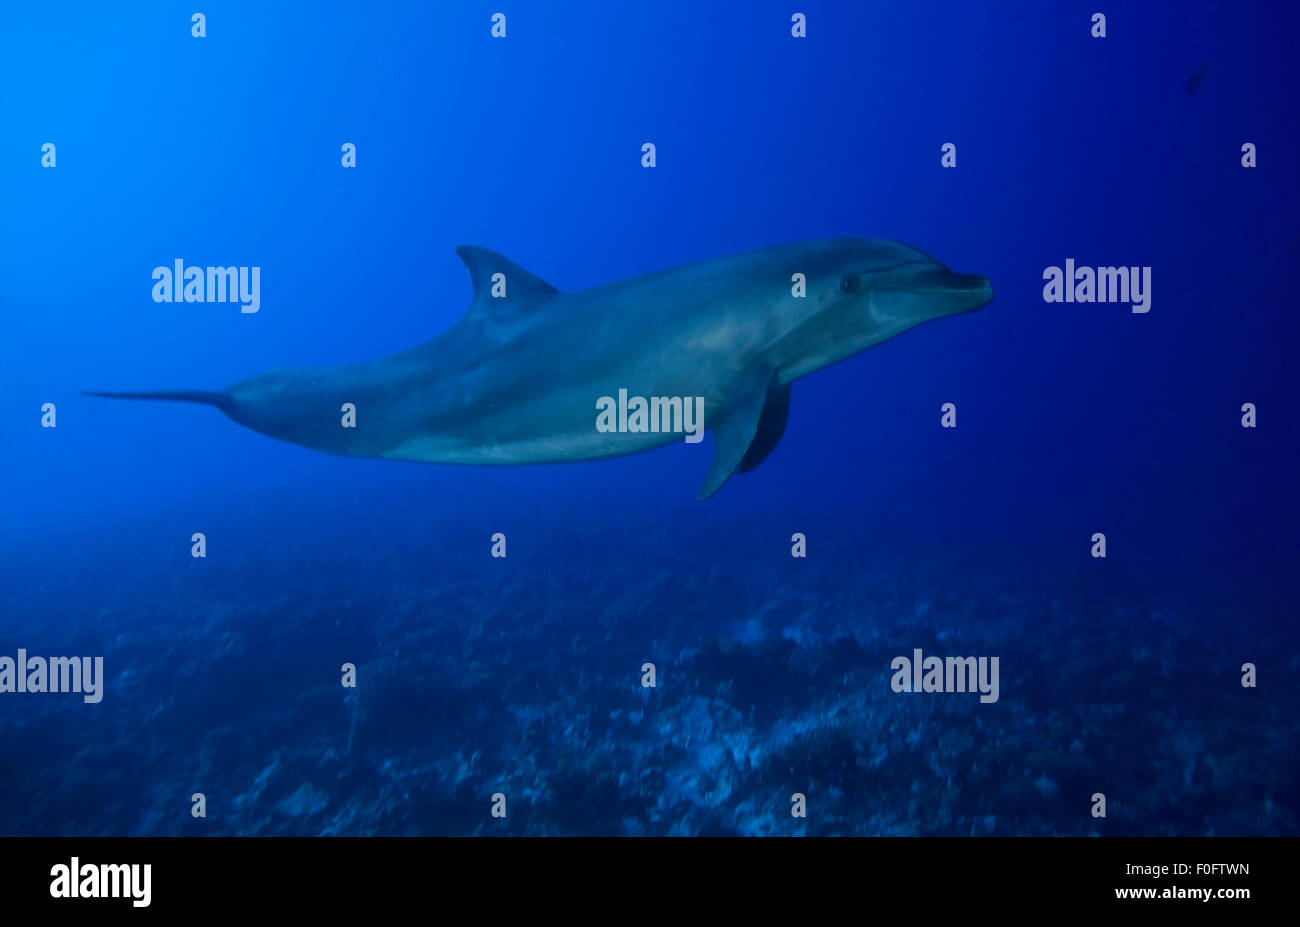 Naso di Bottiglia di nuoto con i delfini in blu acqua chiara Foto Stock